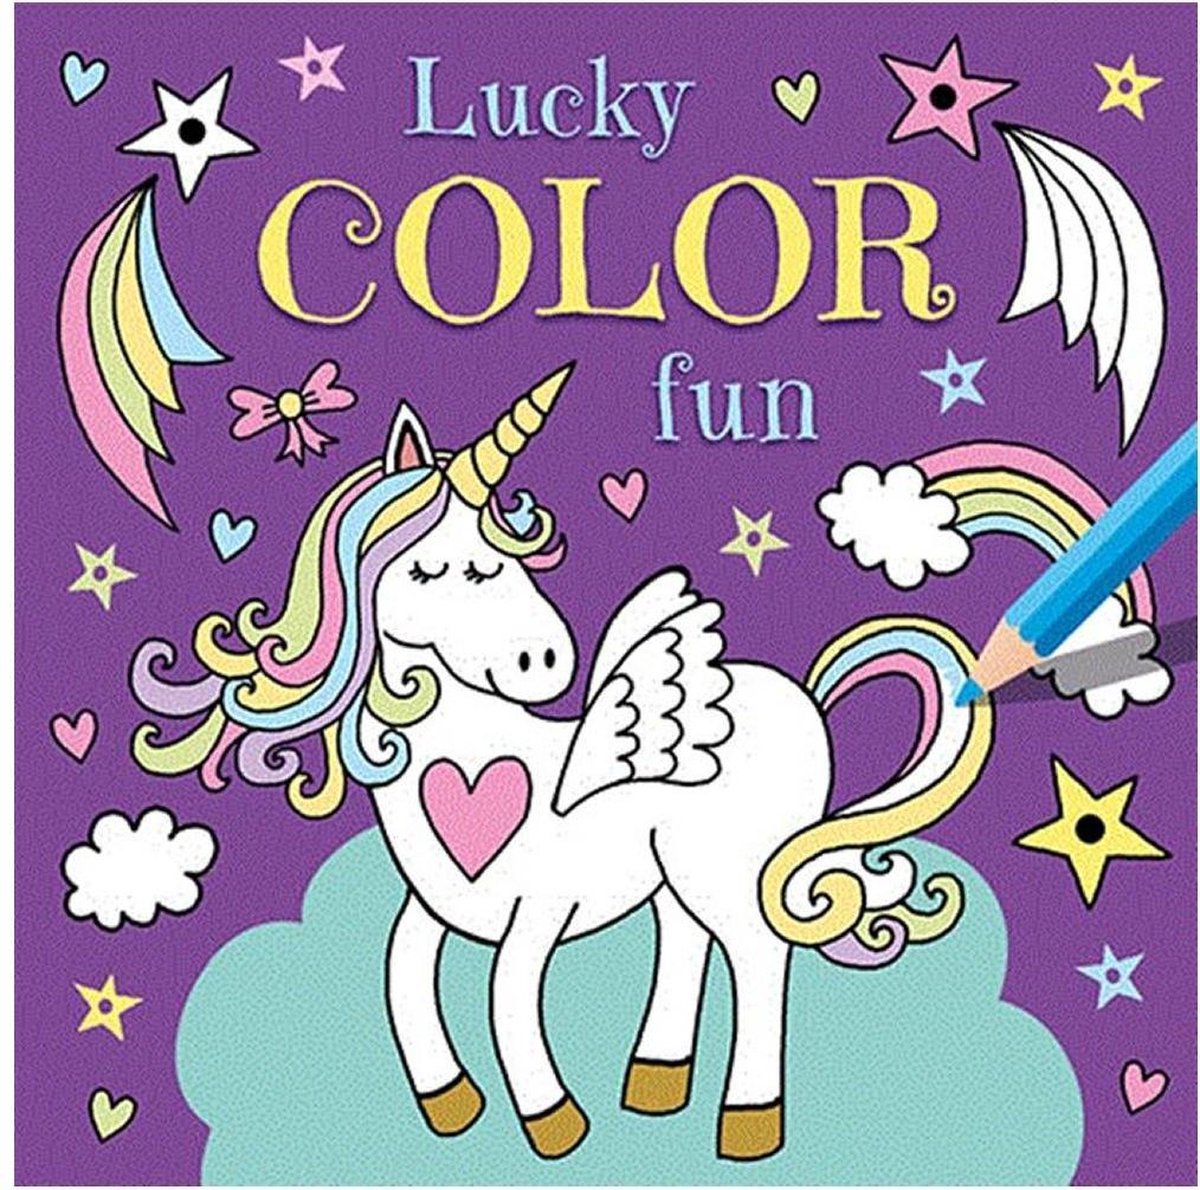 Lucky Color Fun - Deltas/Chantecler